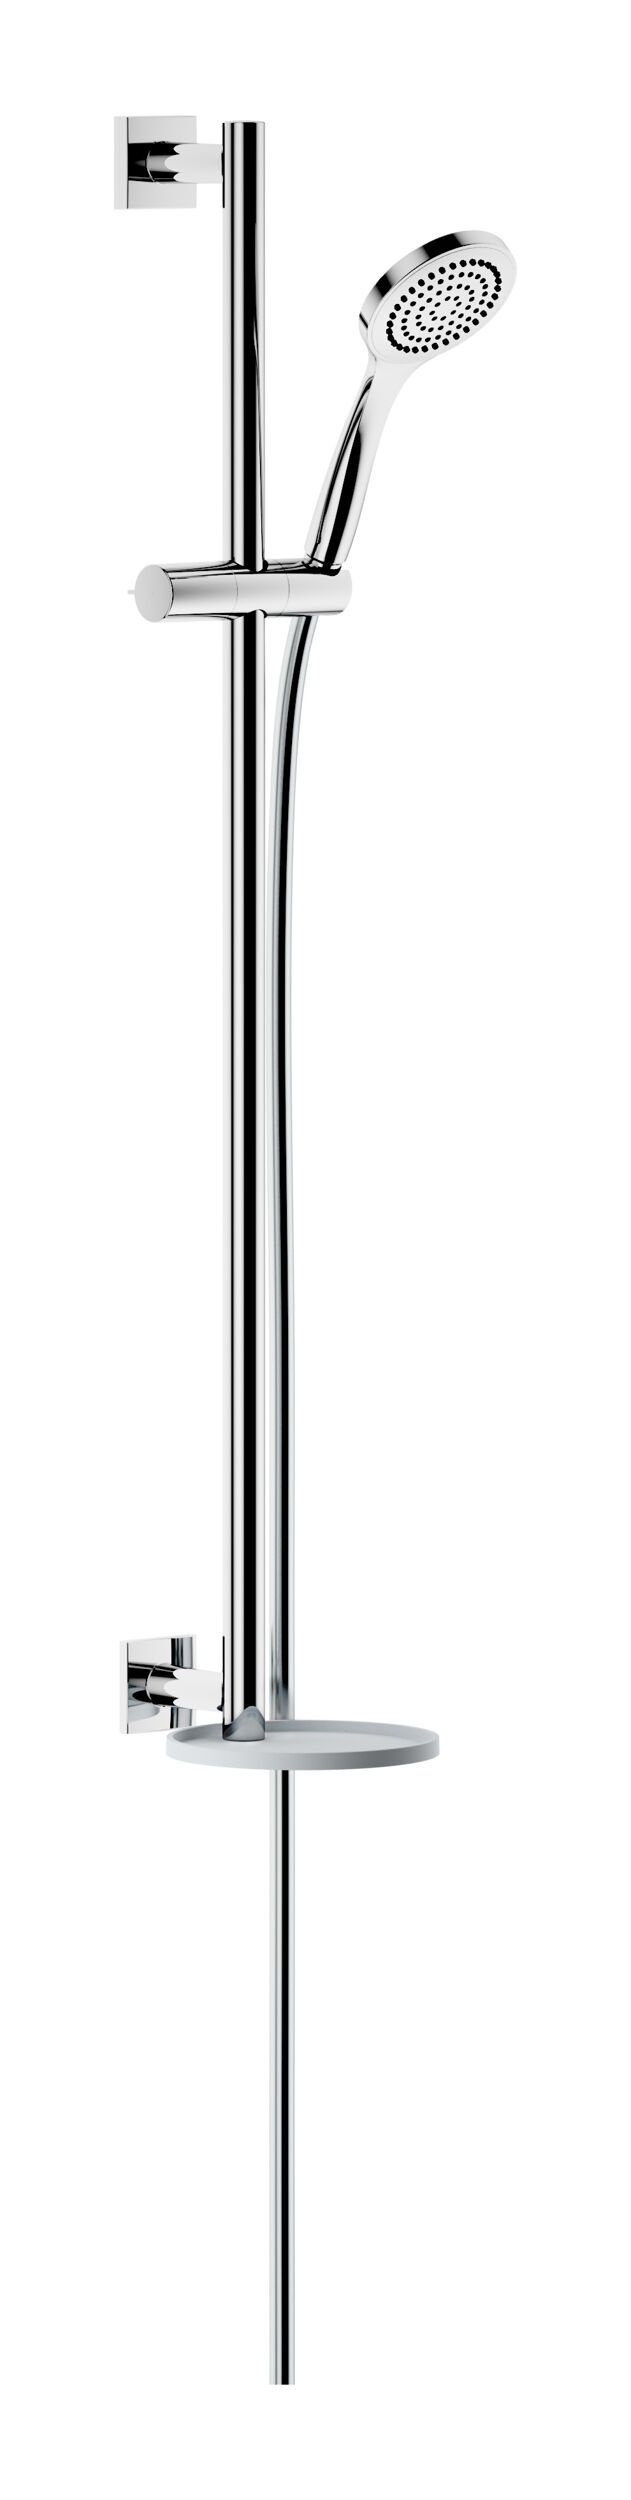 Keuco Brausegarnitur IXMO, Höhe 85.5 cm, 1 Strahlart(en), Brause-Set mit Ablage eckig - Verchromt / Weiß